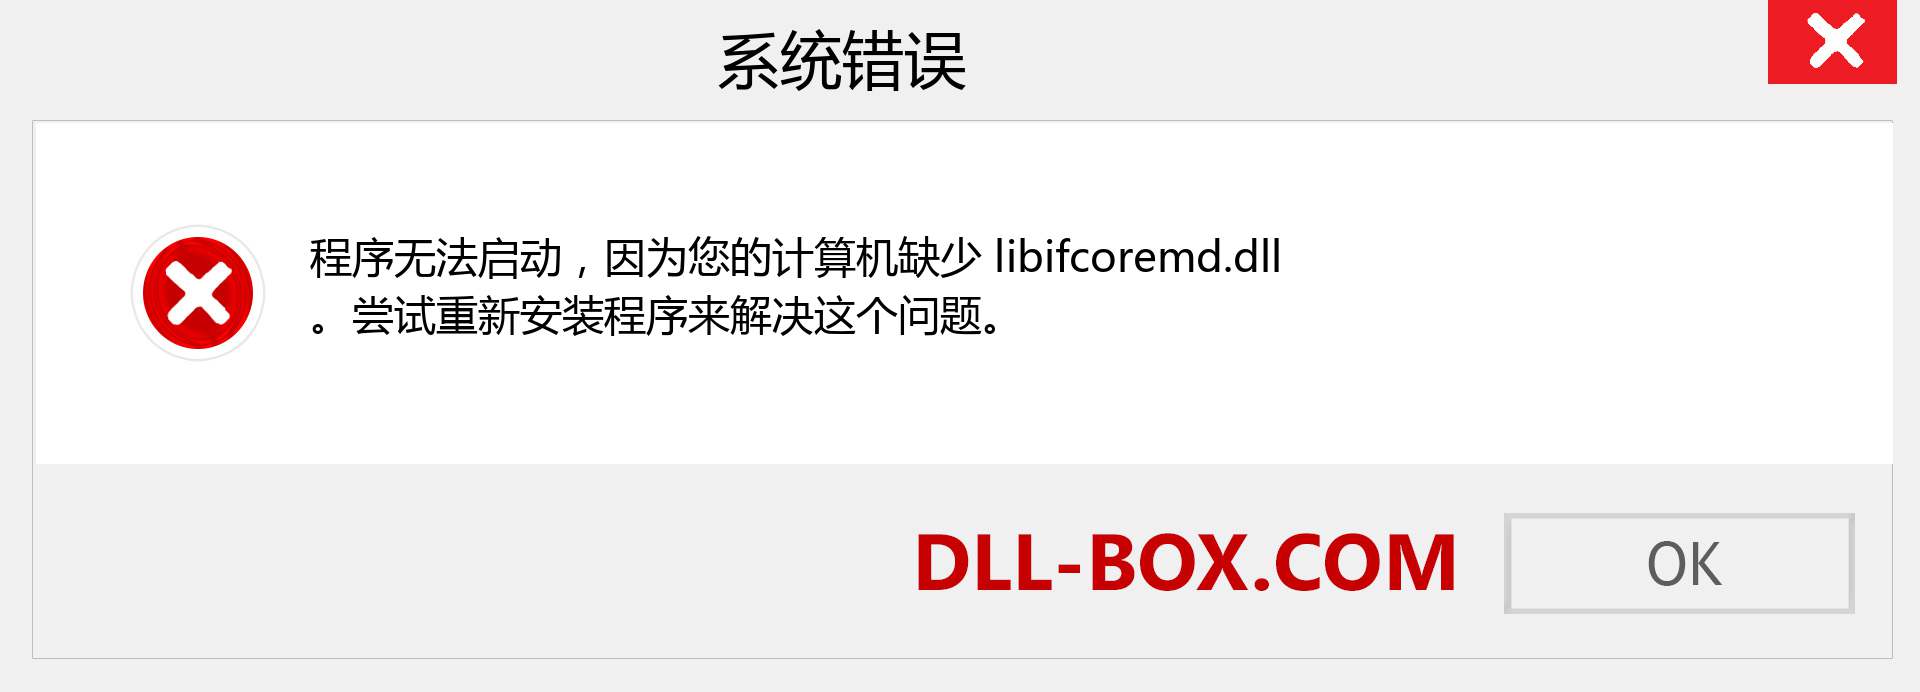 libifcoremd.dll 文件丢失？。 适用于 Windows 7、8、10 的下载 - 修复 Windows、照片、图像上的 libifcoremd dll 丢失错误